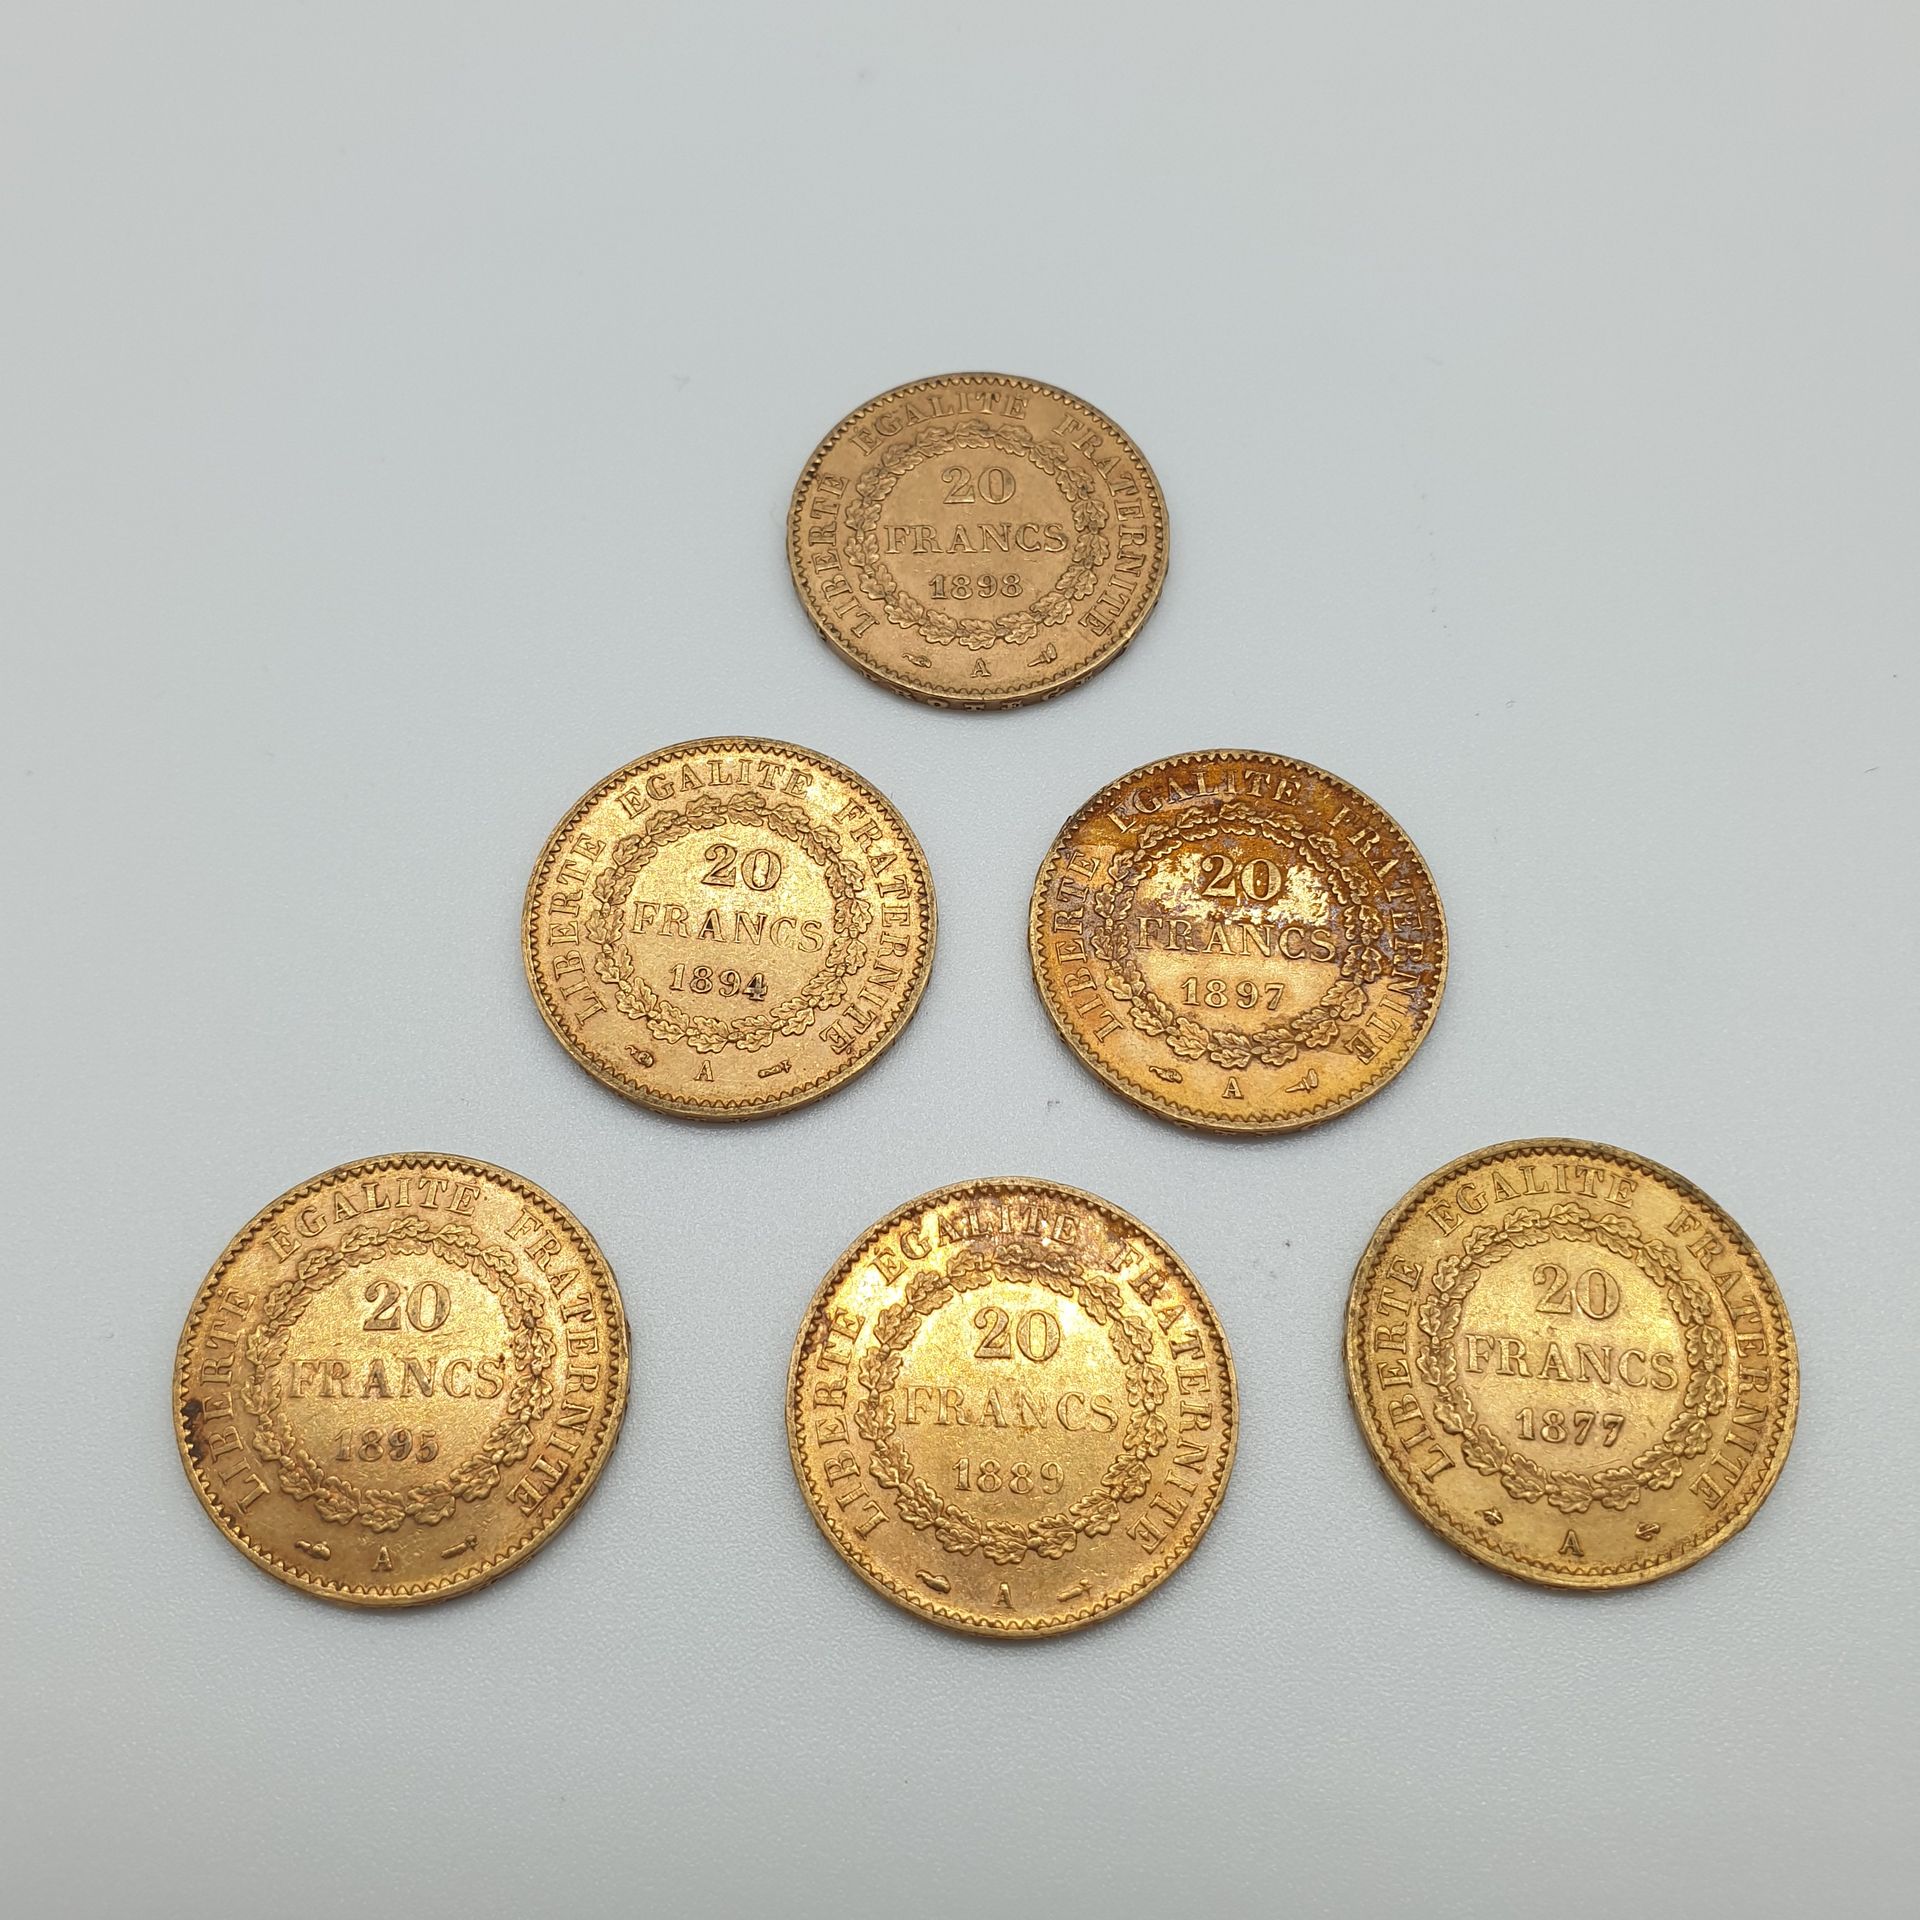 Null 六枚带精灵的20法郎金币拍品，1889/A, 1894/A, 1898/A, 1877/A, 1895/A, 1897/A

重量 : 38,64 g